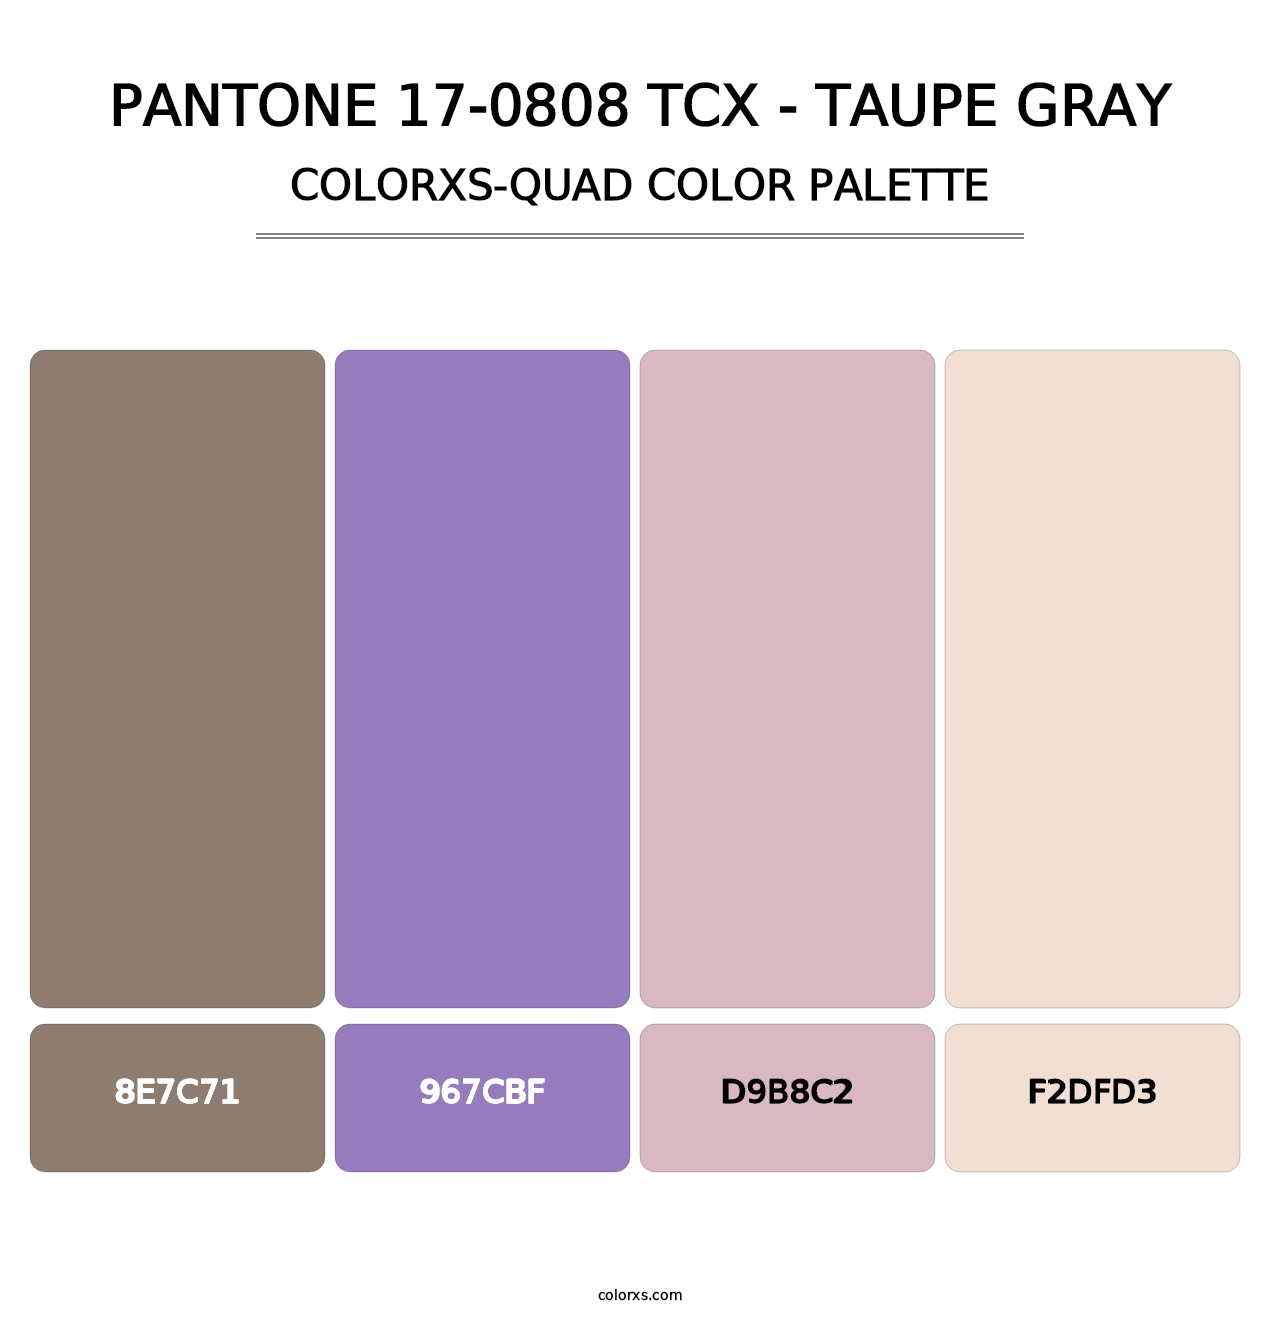 PANTONE 17-0808 TCX - Taupe Gray - Colorxs Quad Palette